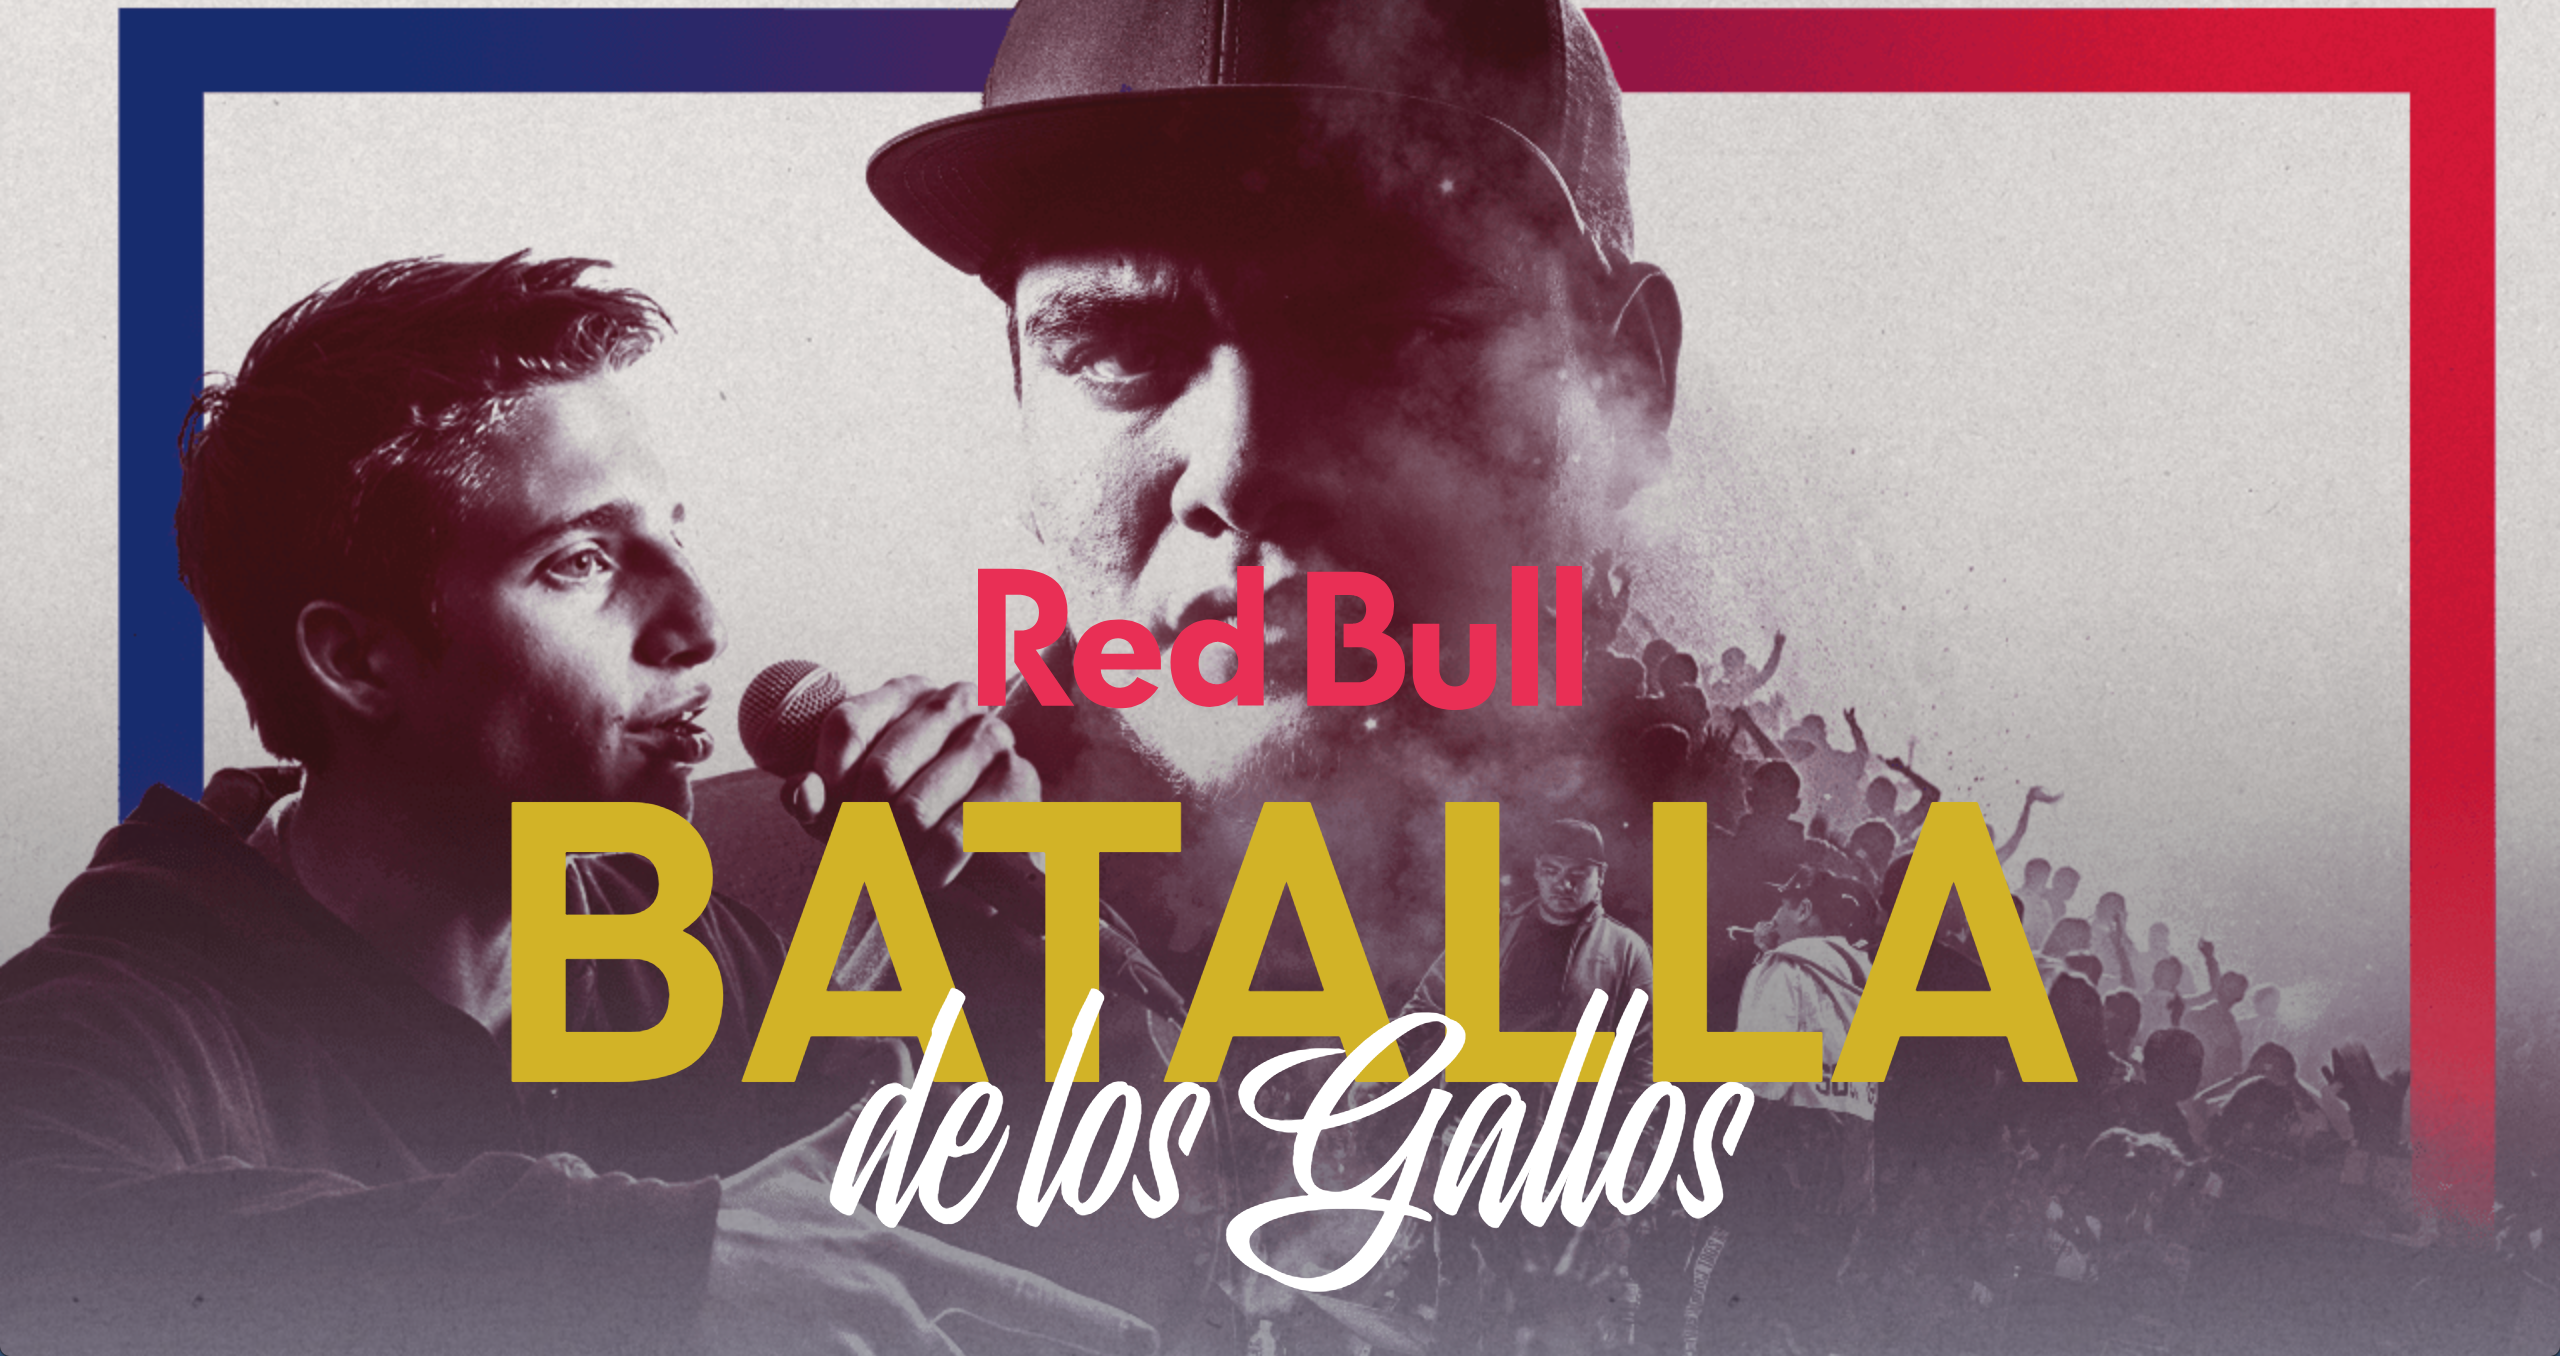 Todo listo para la Red Bull Batalla de los Gallos 2018.